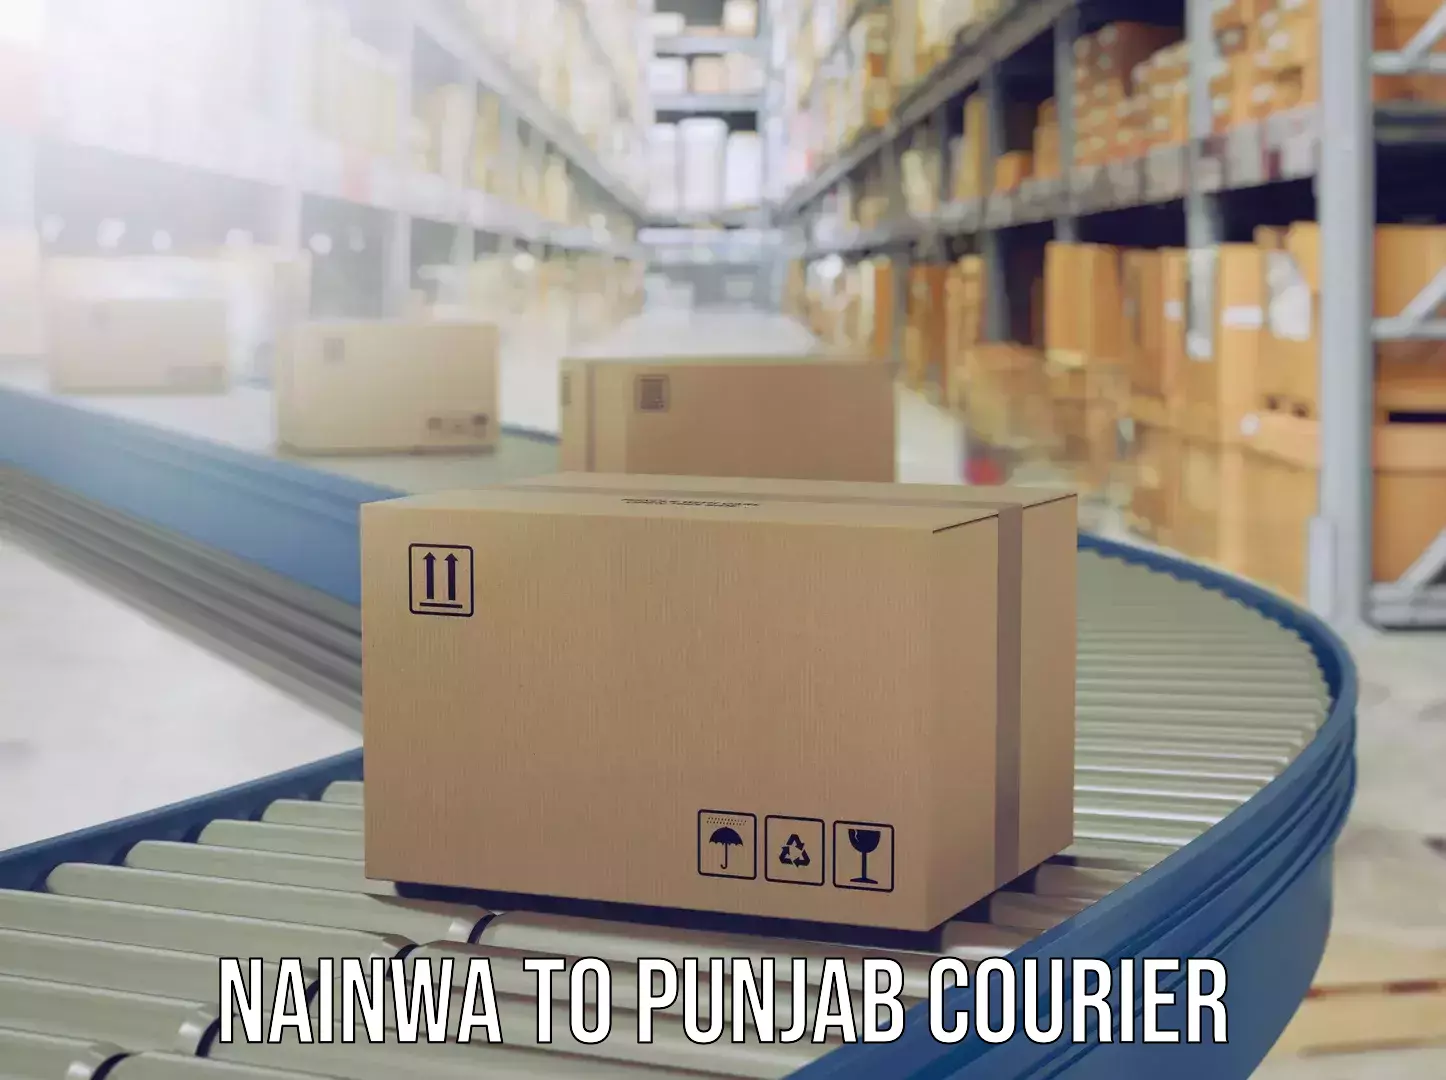 Luggage delivery app Nainwa to Punjab